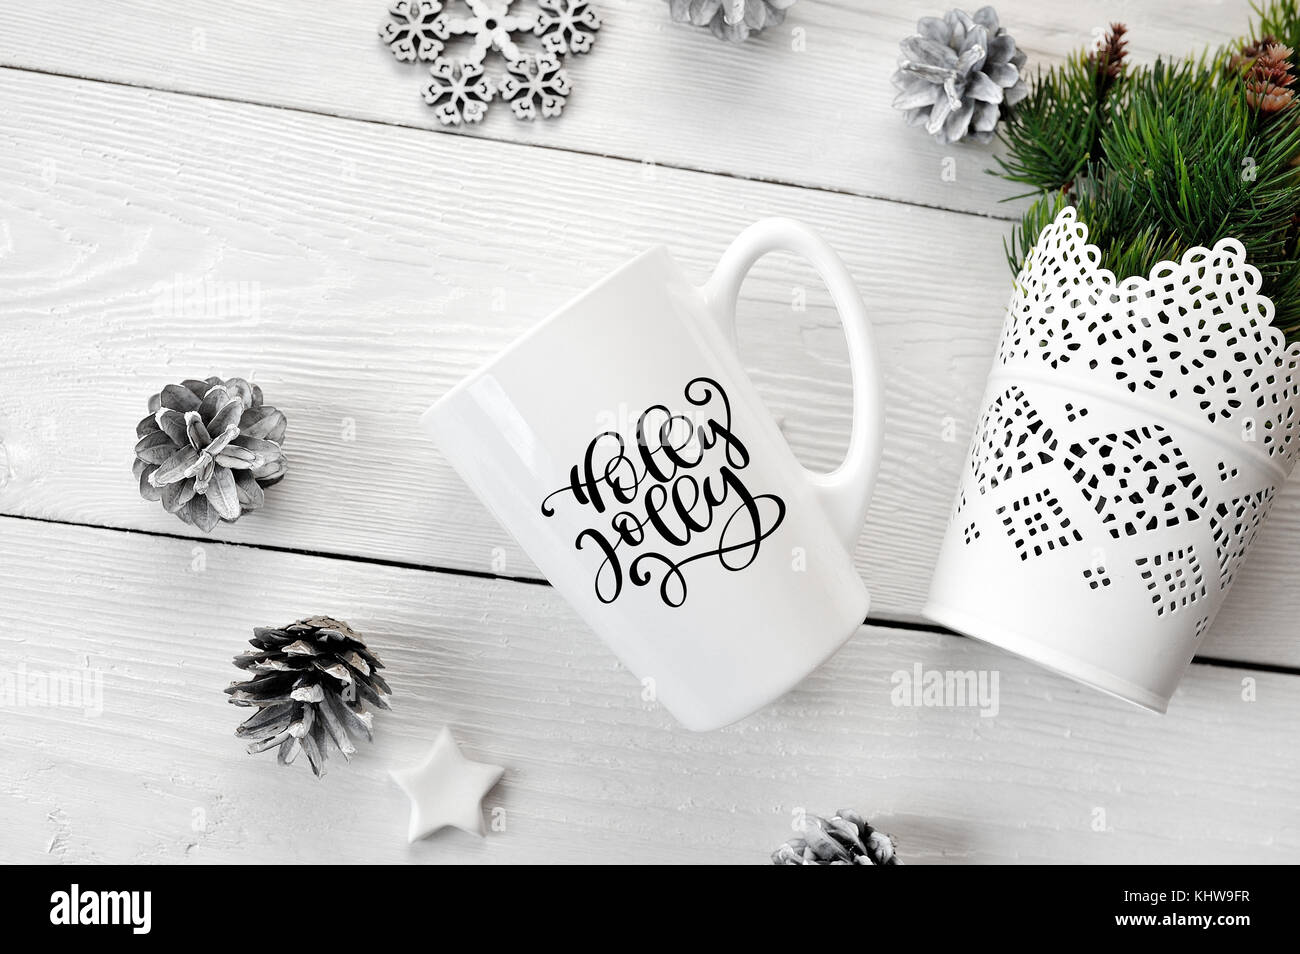 Texto navidad holly jolly en una taza blanca con un decorado de Navidad. plano laico, ver foto superior boceto Foto de stock